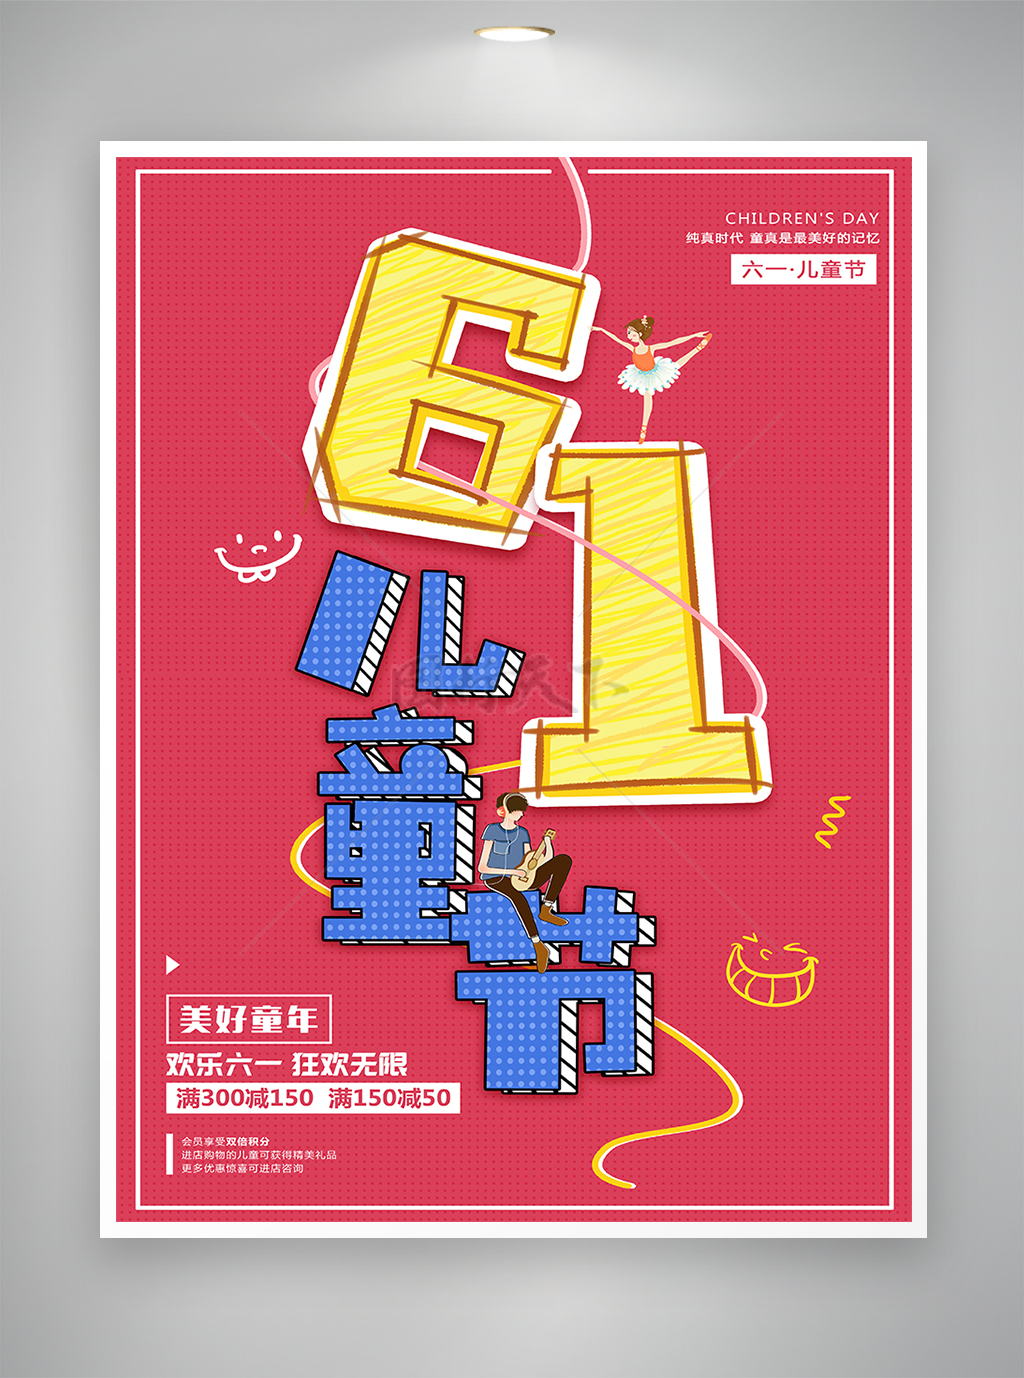 欢乐六一狂欢无限61儿童节促销宣传海报